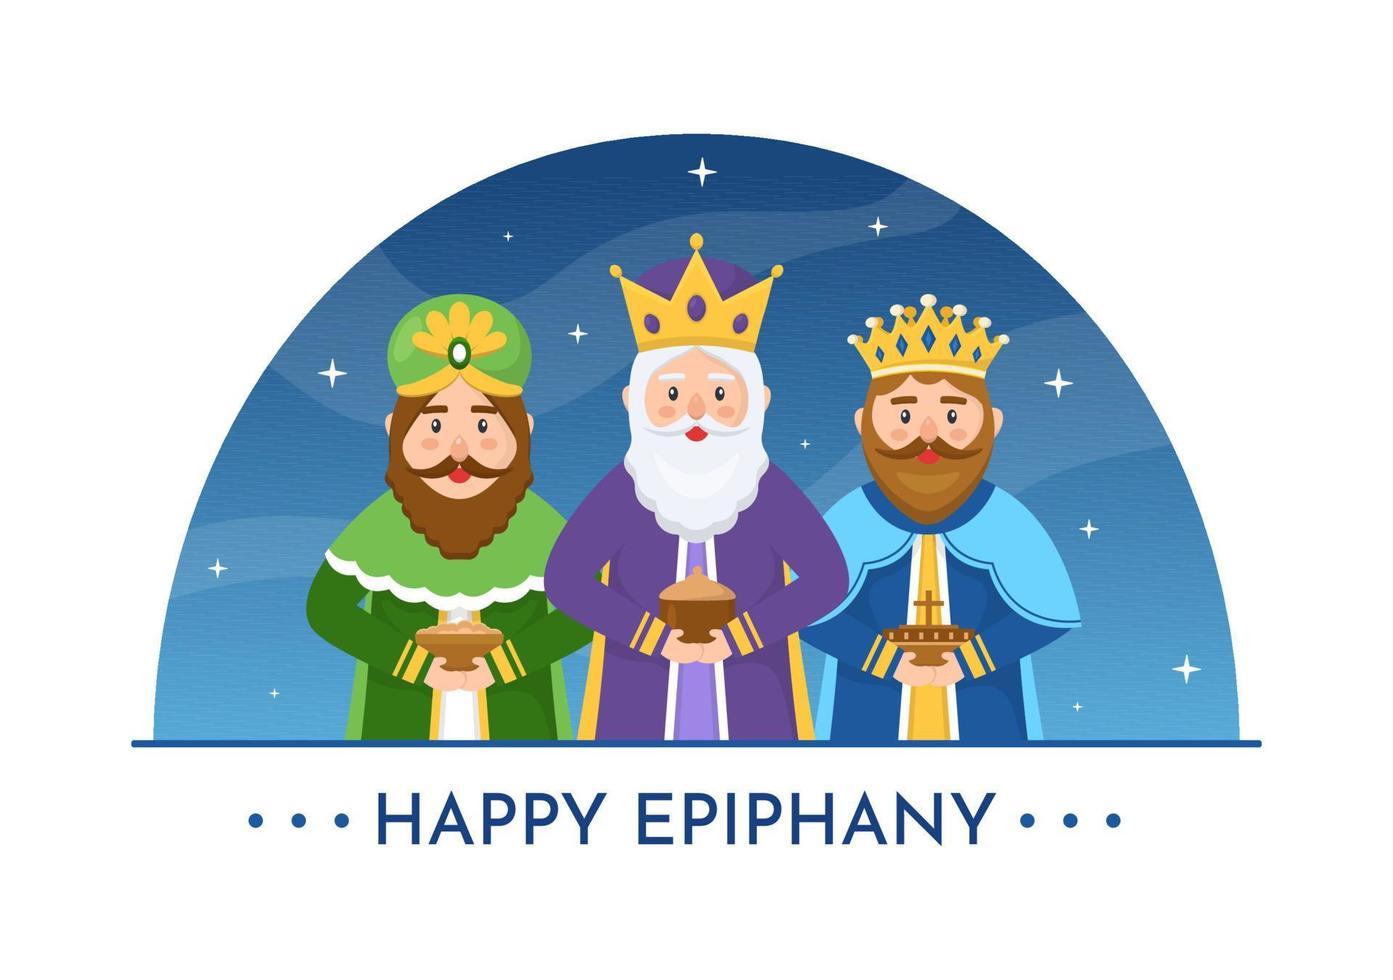 happy epiphany day template handgezeichnete cartoon flache illustration christliches festival zum glauben an die göttlichkeit jesus seit seinem kommen auf die welt vektor